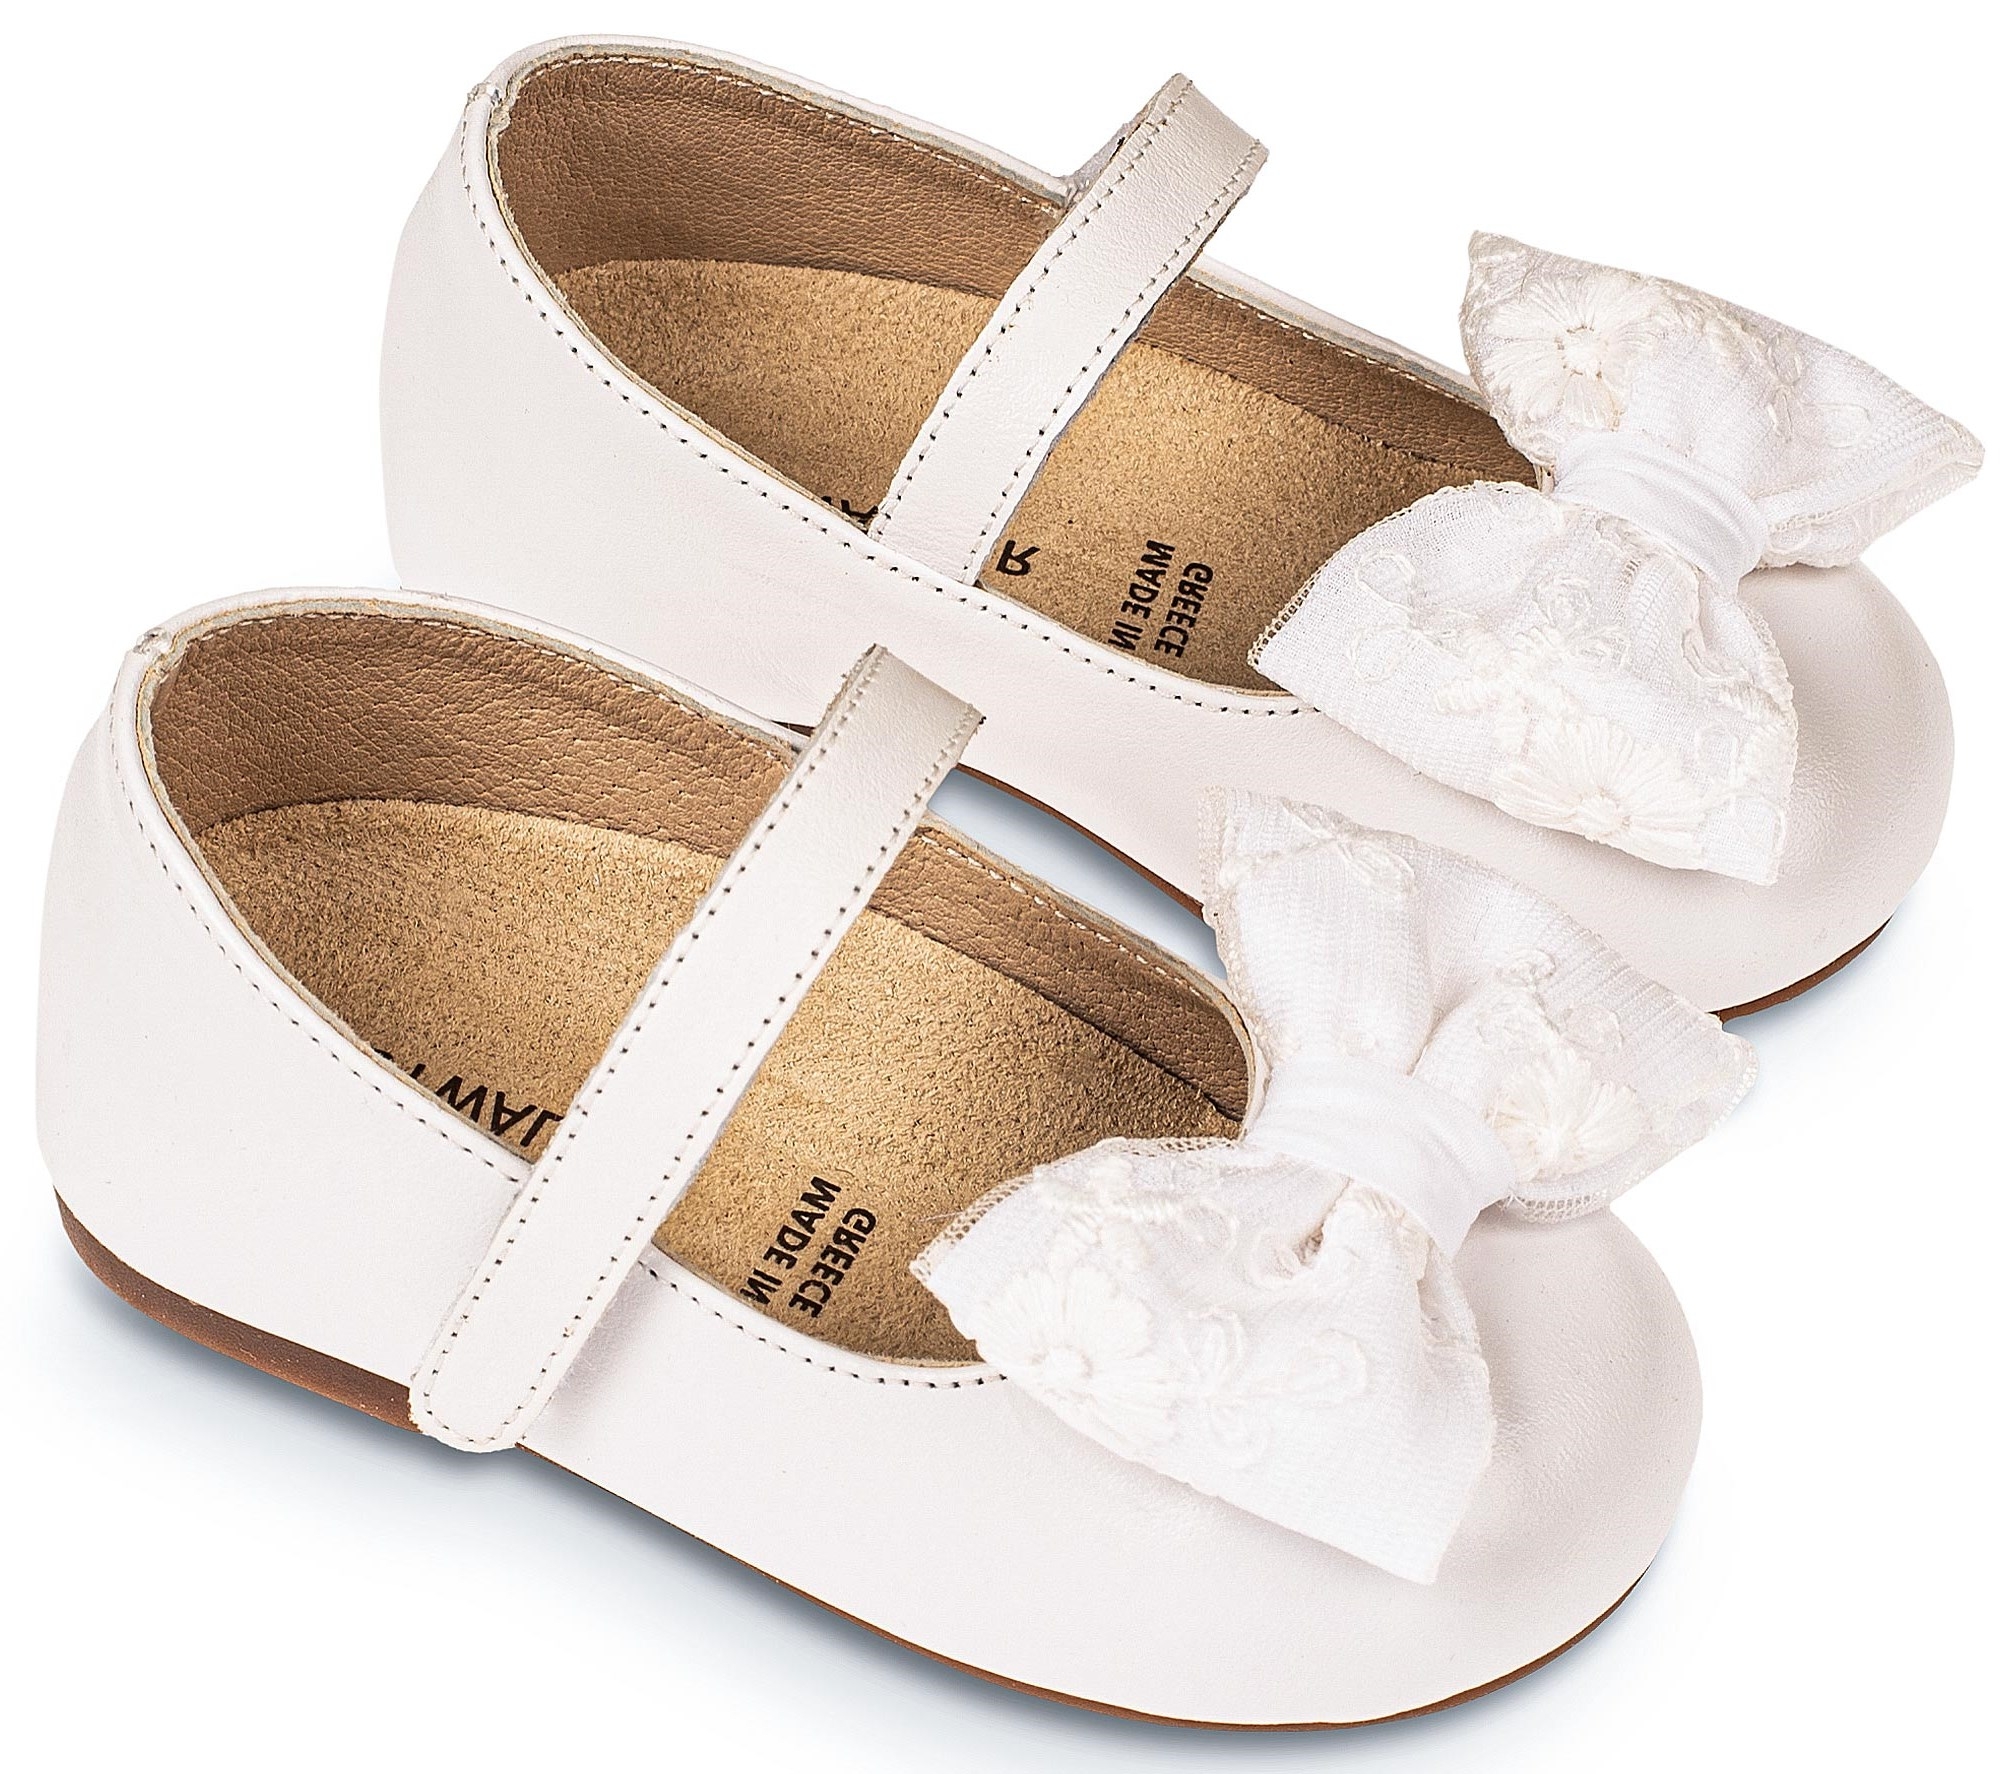 Γοβάκι με φιογκάκι λευκό - Βαπτιστικά παπούτσια για κορίτσι